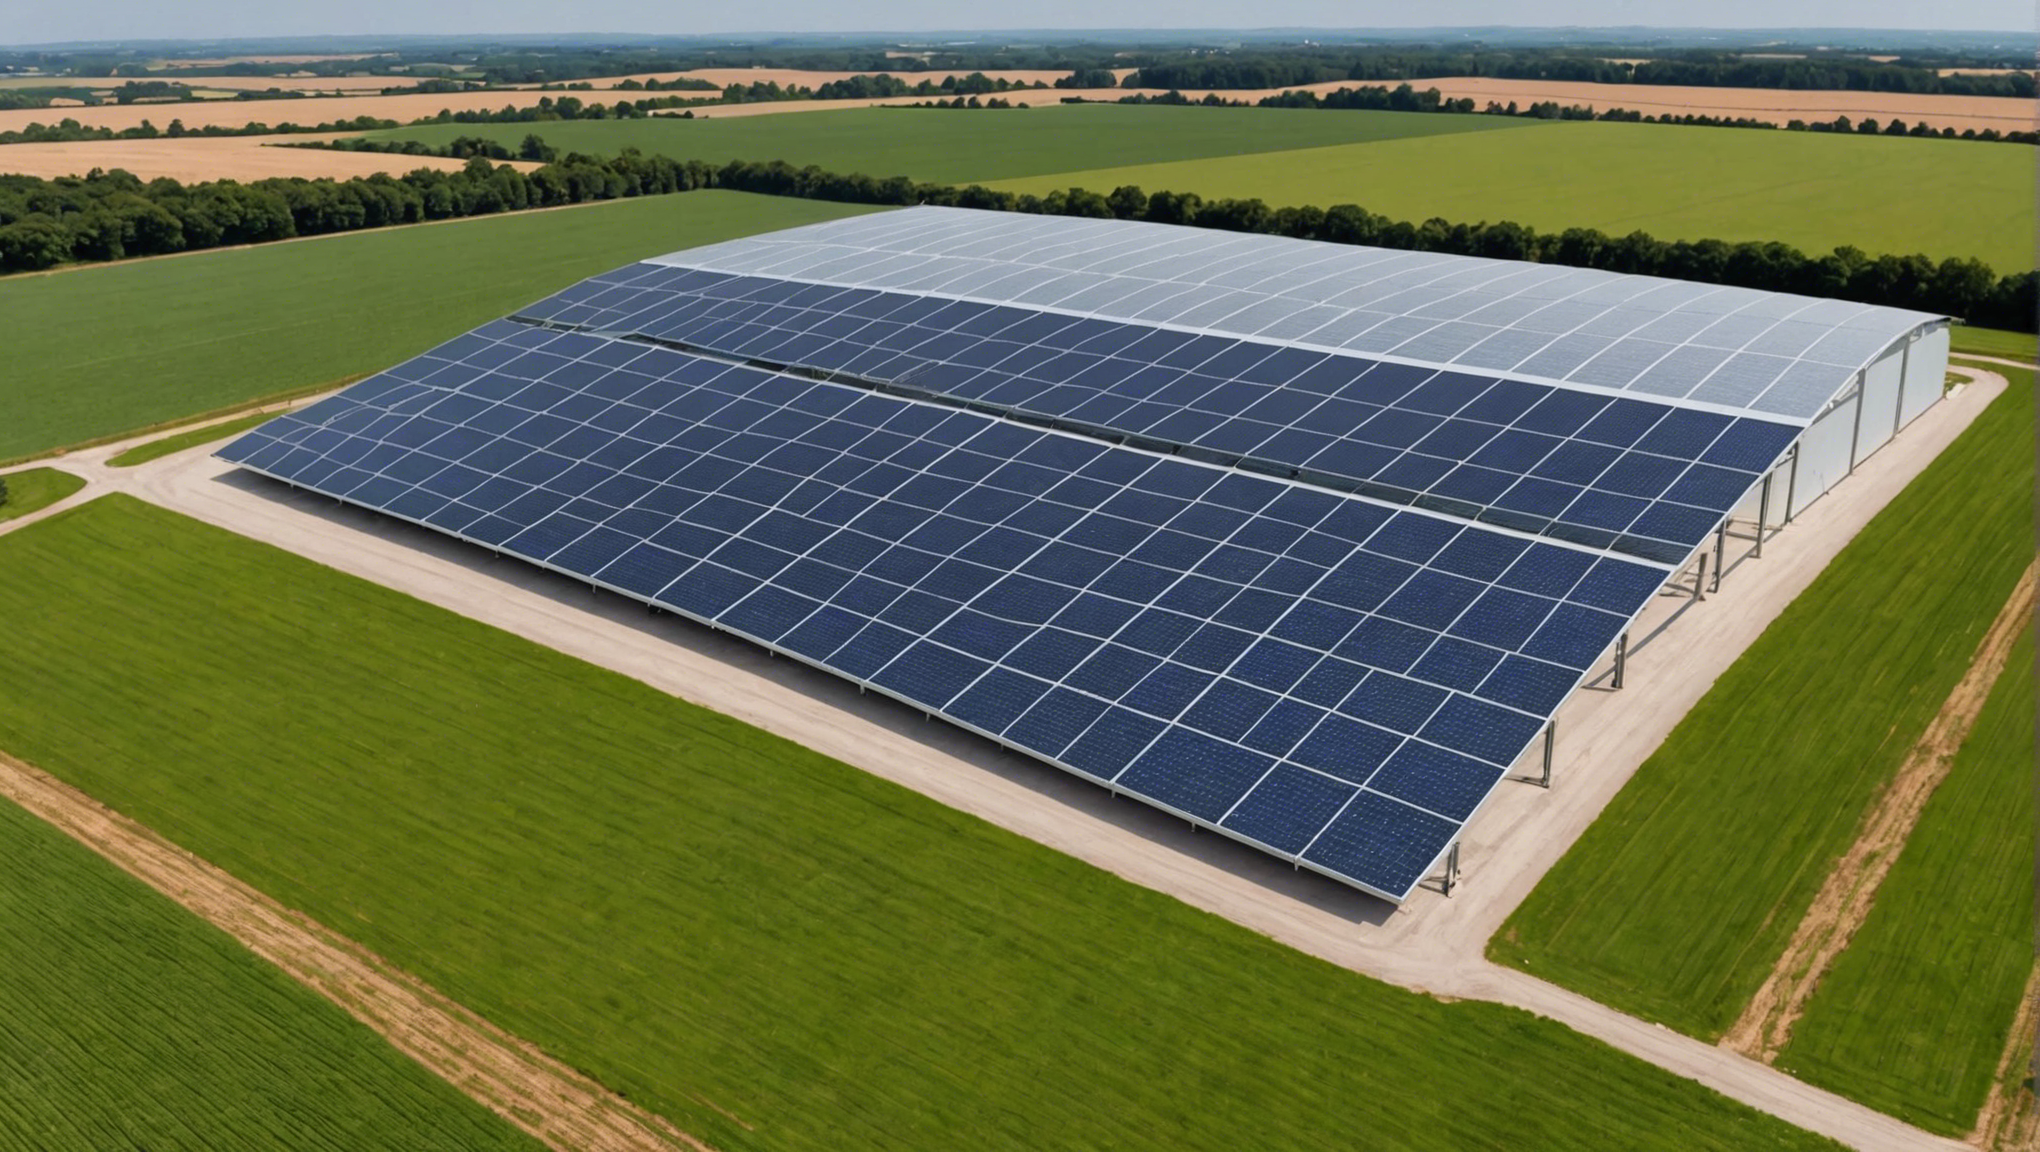 découvrez les avantages du hangar agricole photovoltaïque d'arkolia énergies pour une production d'énergie renouvelable efficace et une optimisation de l'espace agricole.